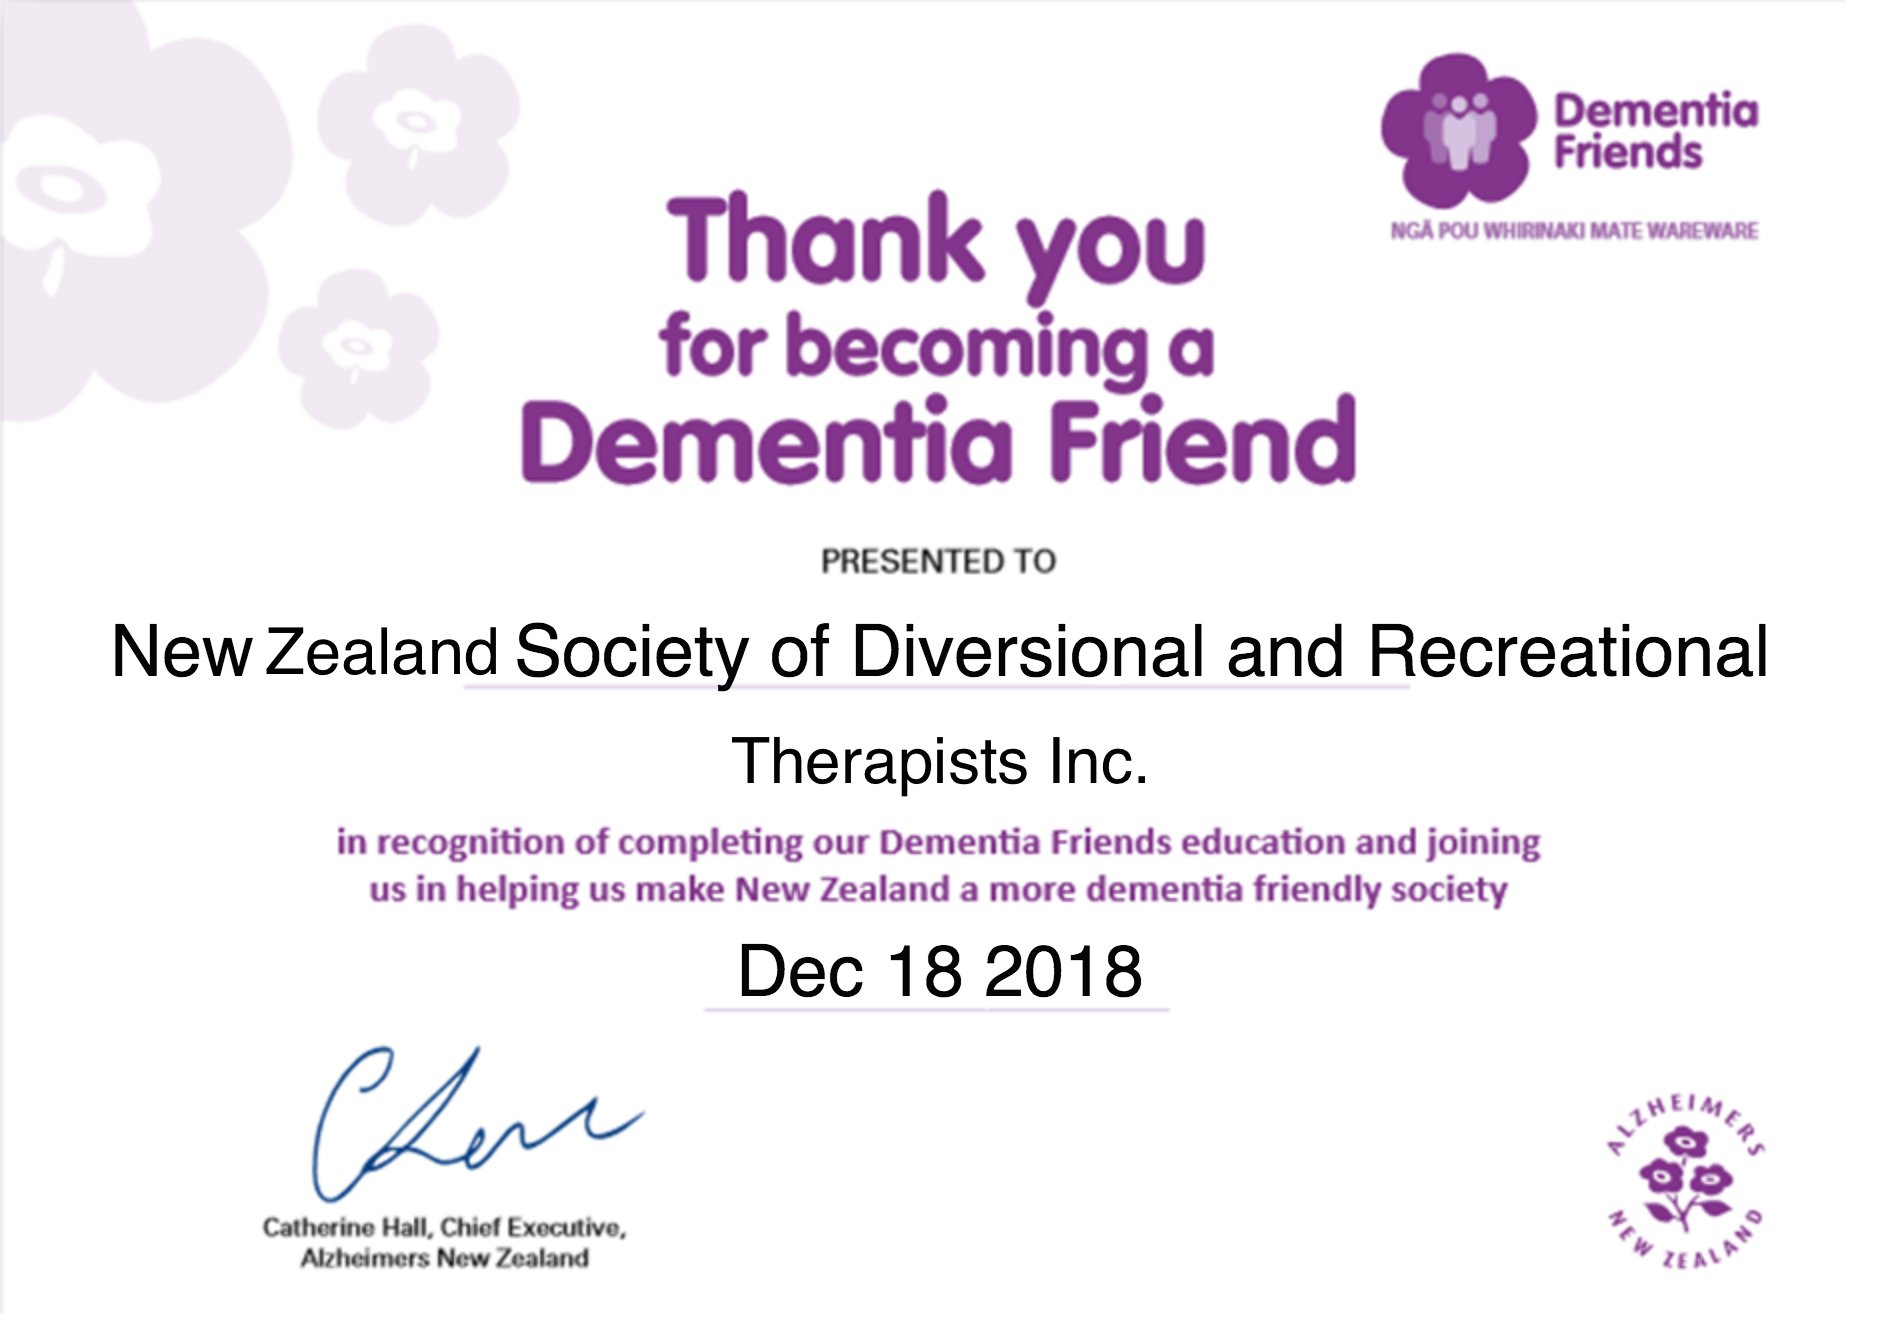 NZSDRT Inc. Dementia Friends